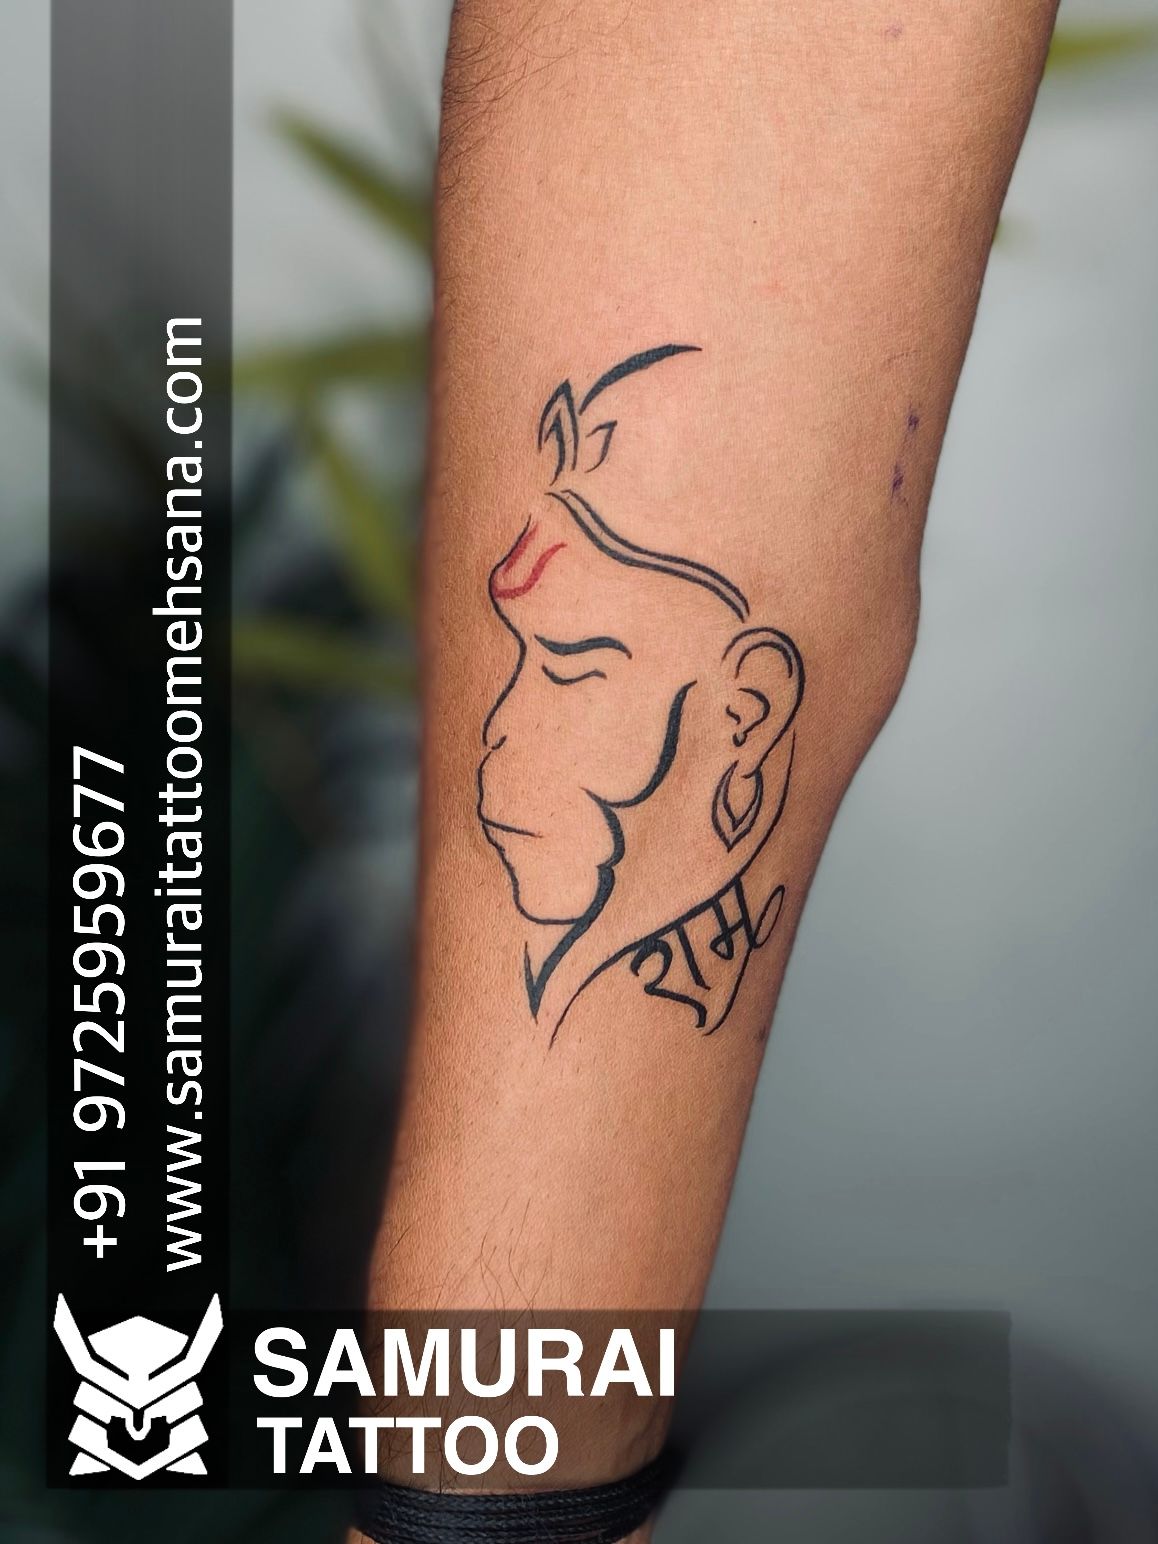 Tattoo uploaded by Patel krunal • Hanuman dada tattoo • Tattoodo